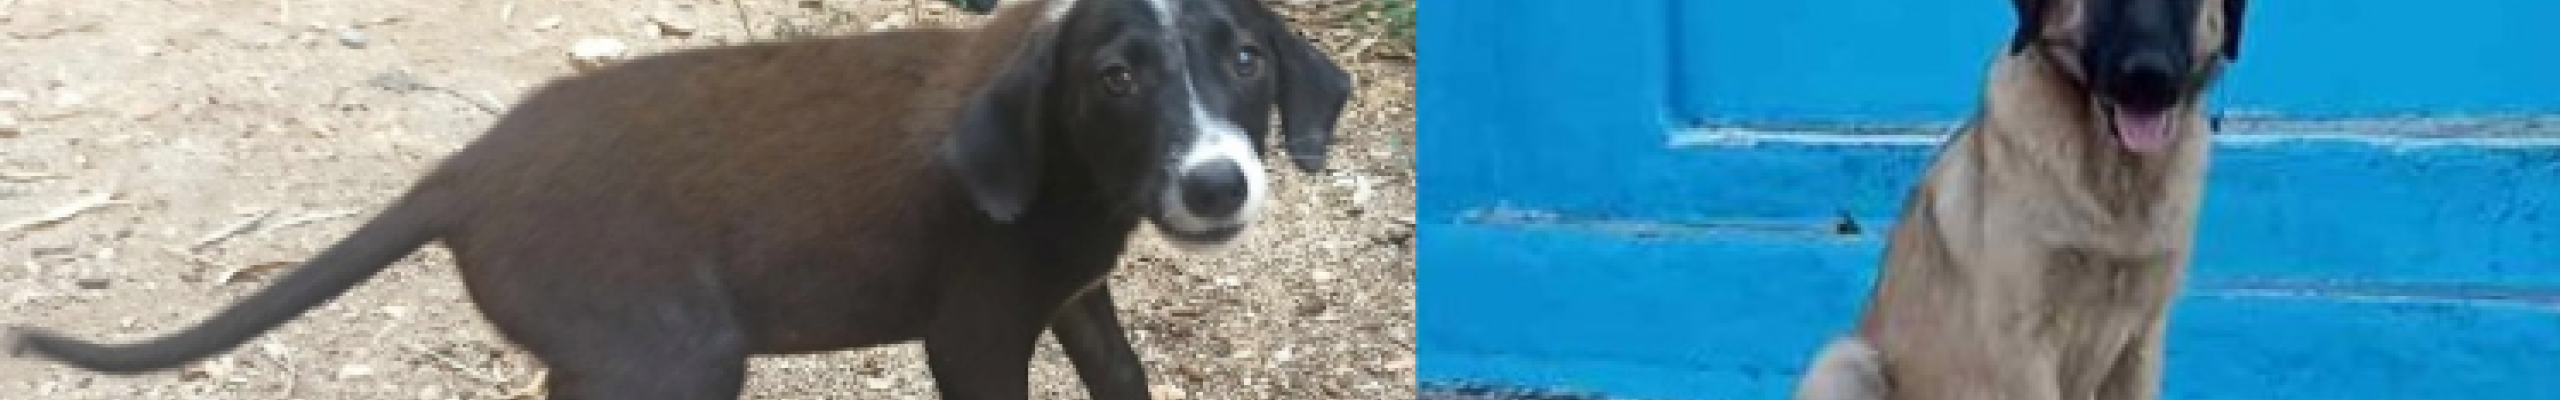 Δήμος Σάμης: Σκυλάκια αναζητούν σπίτι για φιλοξενία